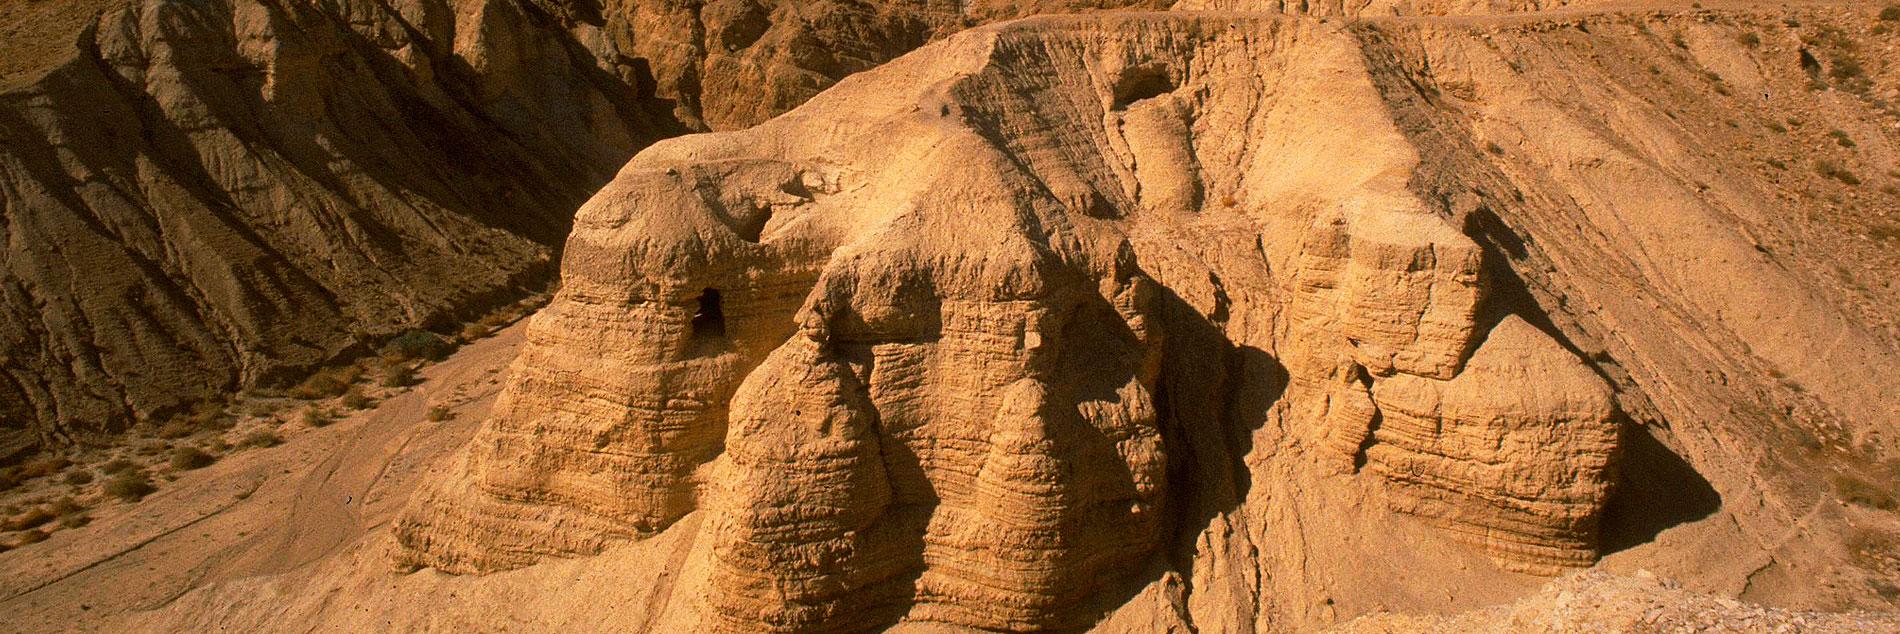 "ציוני דרך" ורשות העתיקות יוצאות בתכנית לאומית לחפירת מערות מדבר יהודה ולהצלת המגילות הגנוזות משוד